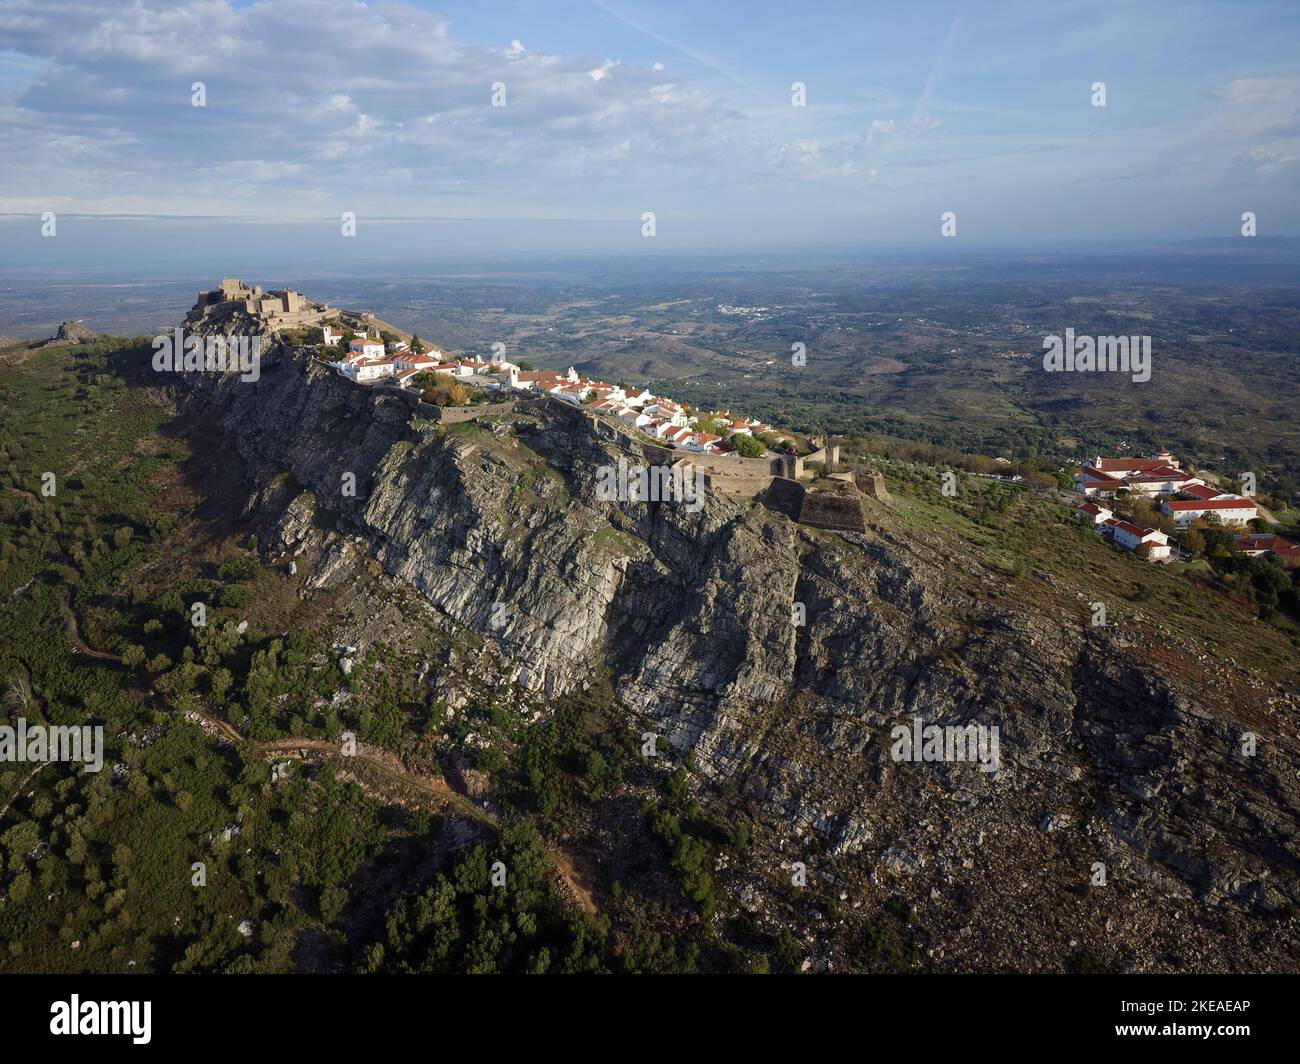 Vue aérienne sur Marvao, villages historiques du Portugal. Château et vieille ville à l'intérieur d'un mur fortifié sur la falaise d'une montagne. Le tourisme rural. Banque D'Images